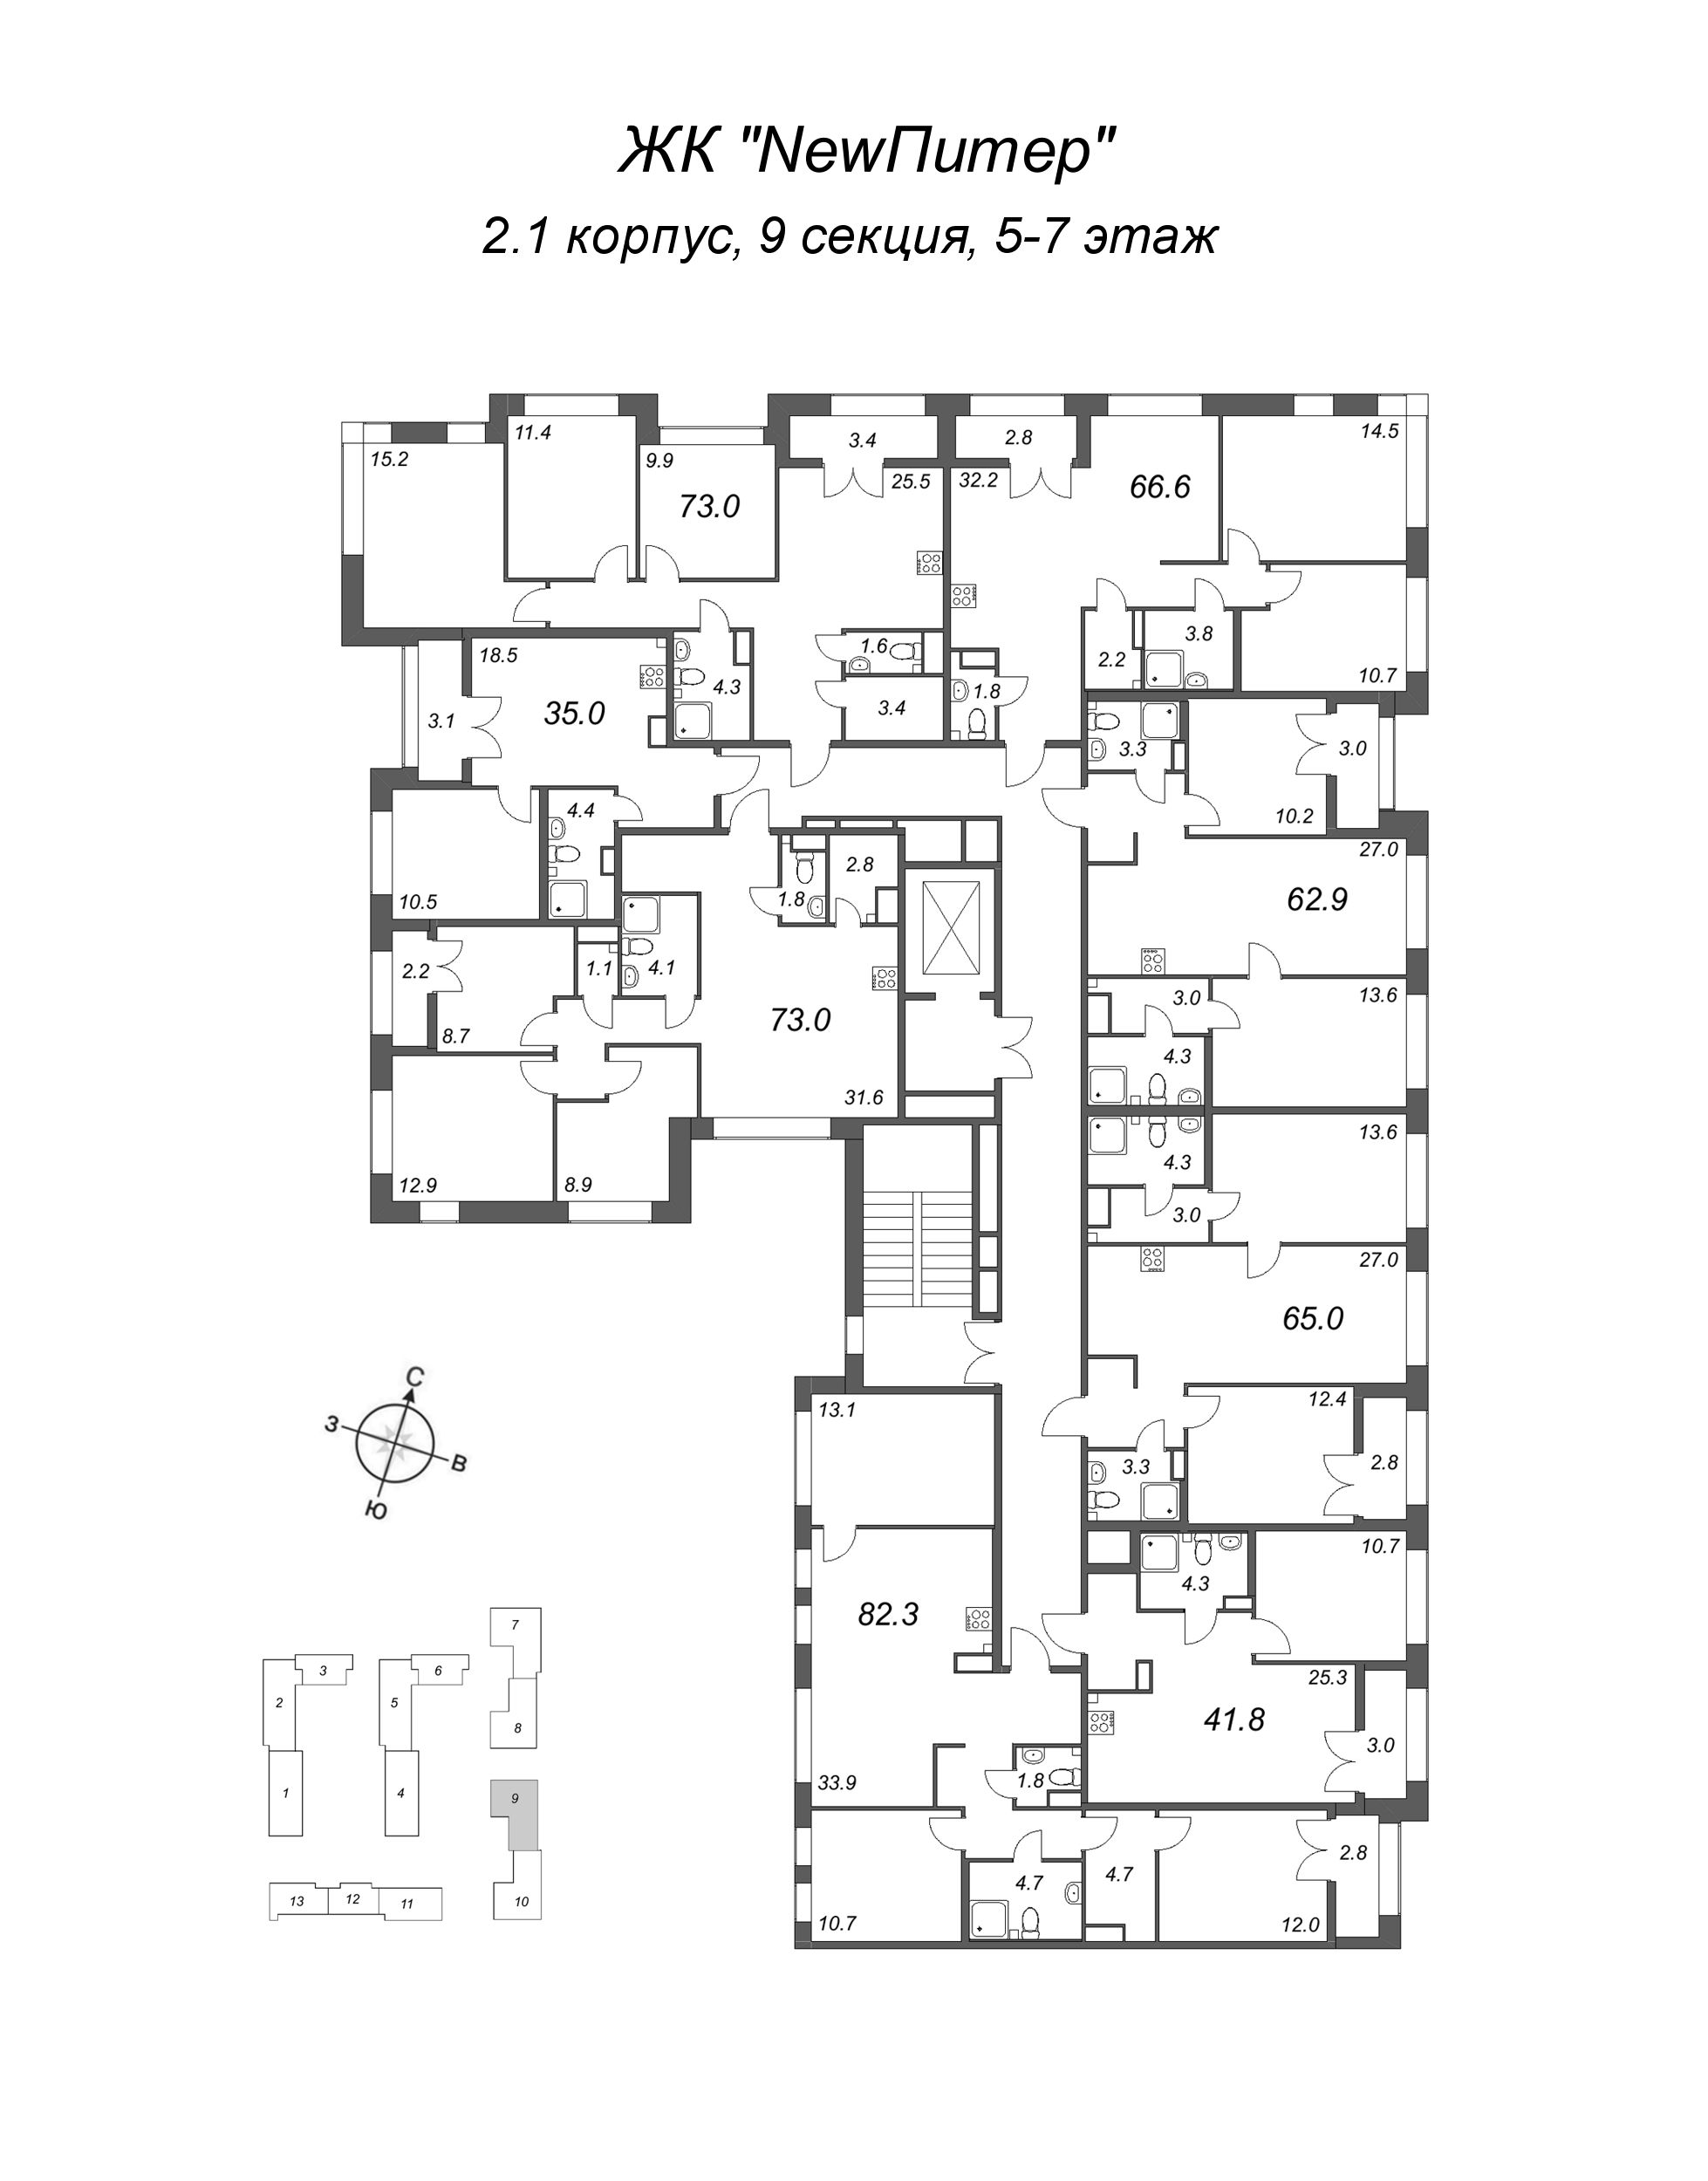 2-комнатная (Евро) квартира, 35 м² в ЖК "NewПитер 2.0" - планировка этажа